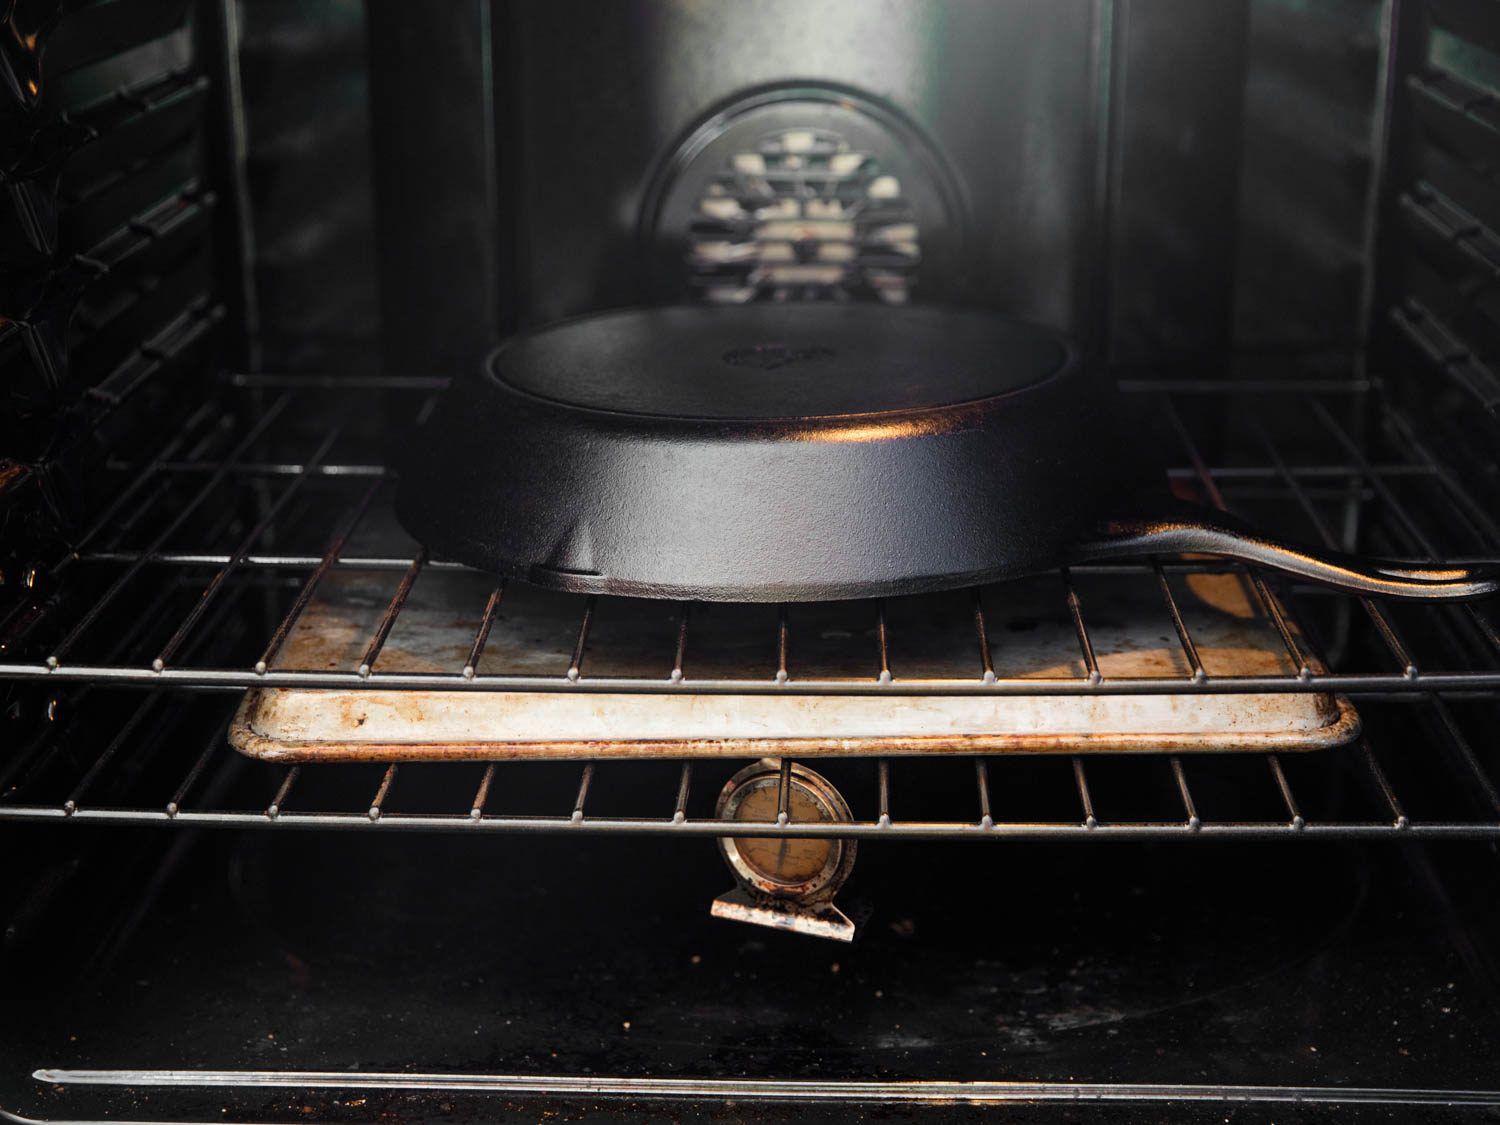 铁锅倒在烤箱里。